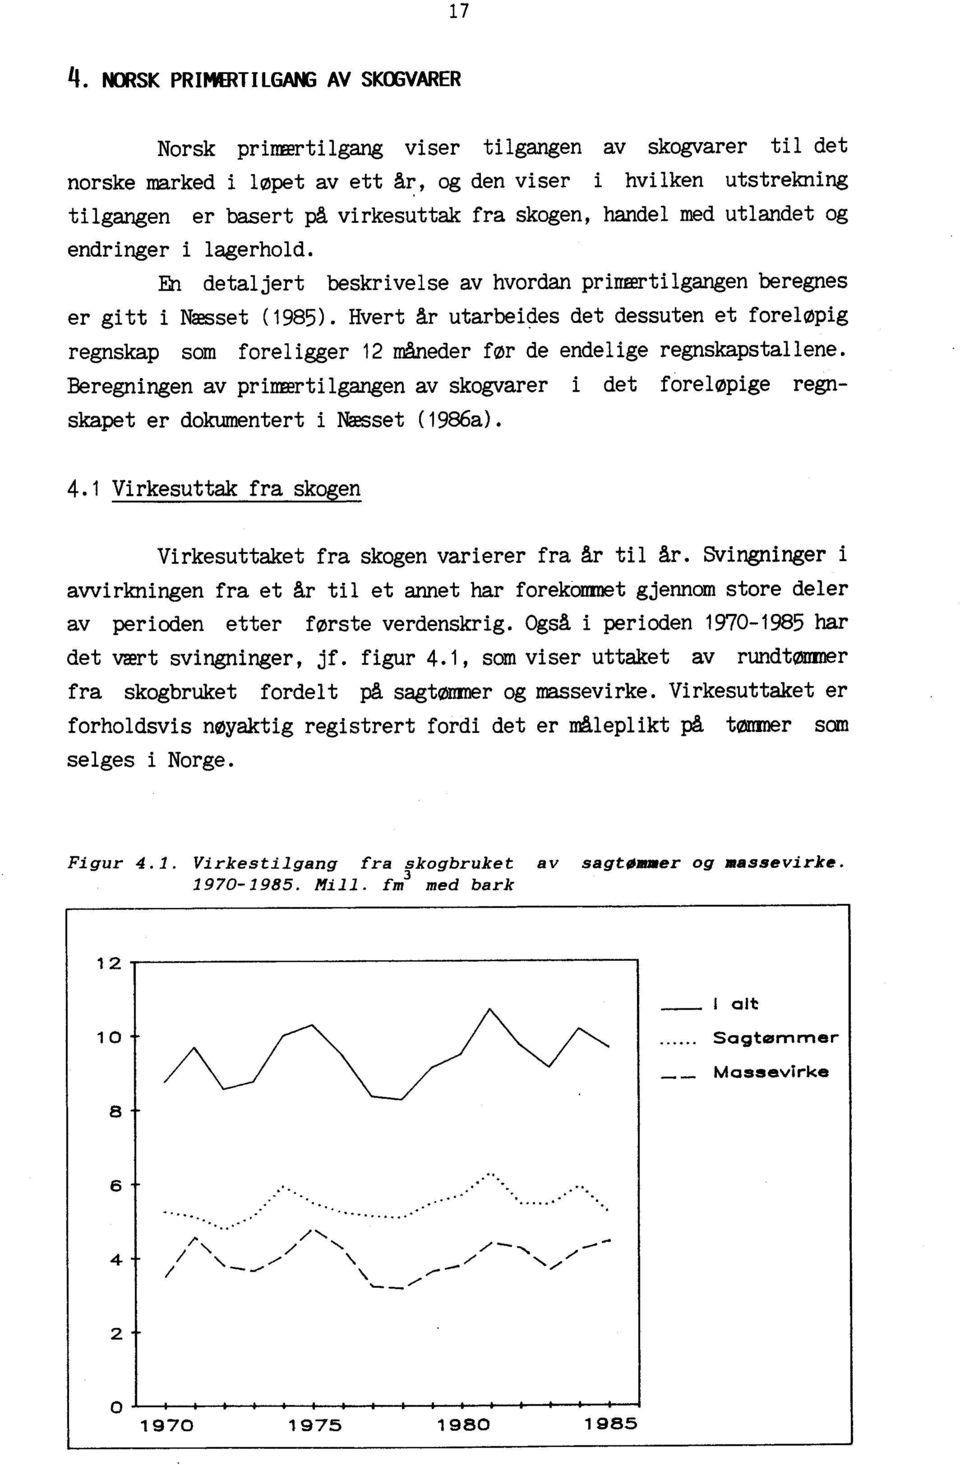 skogen, handel med utlandet og endringer i lagerhold. Eh detaljert beskrivelse av hvordan primærtilgangen beregnes er gitt i Nasset (1985).